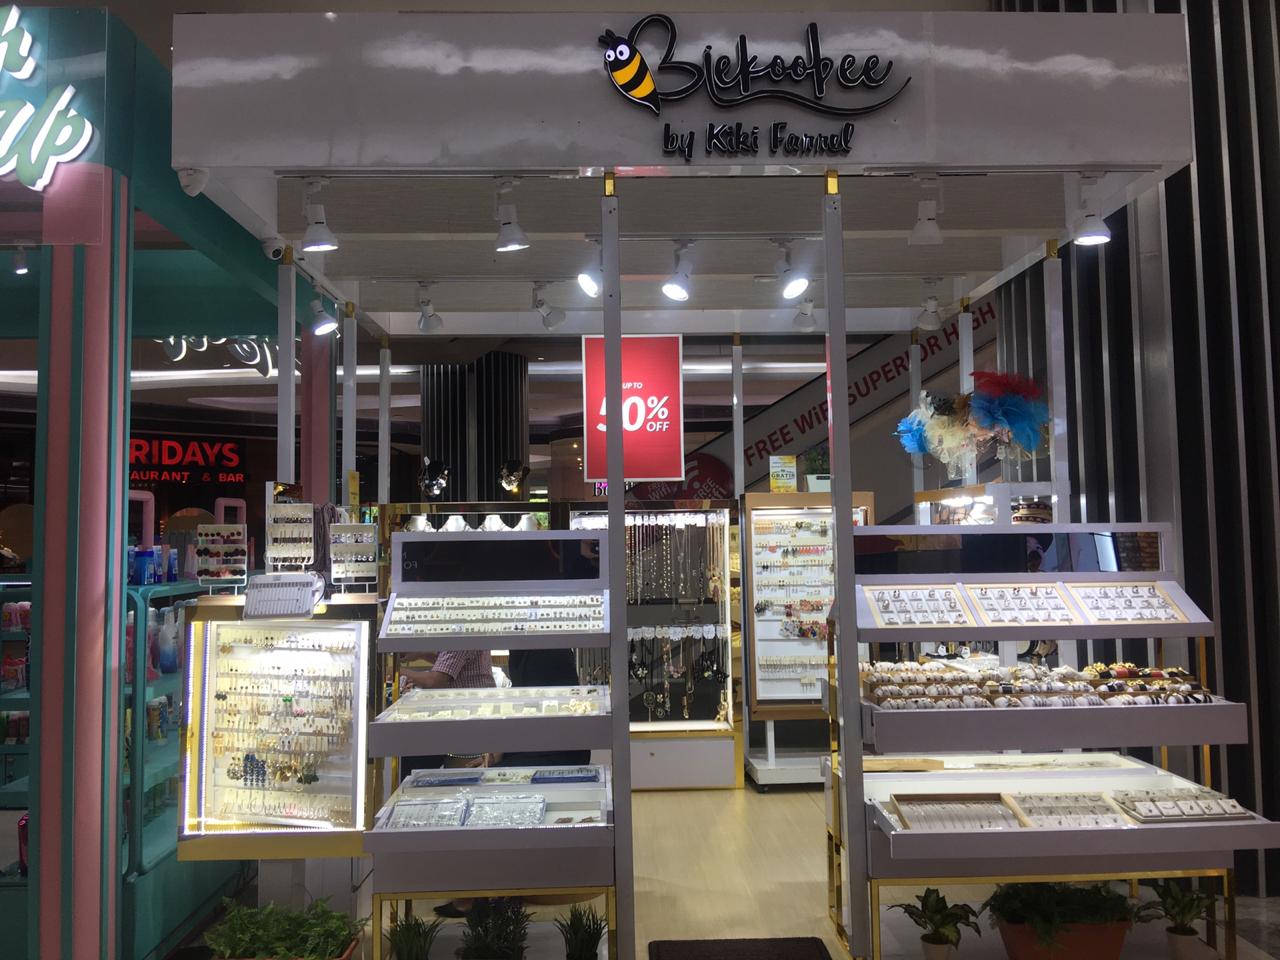 Biekoobee shop front in lippo mall puri st. moritz